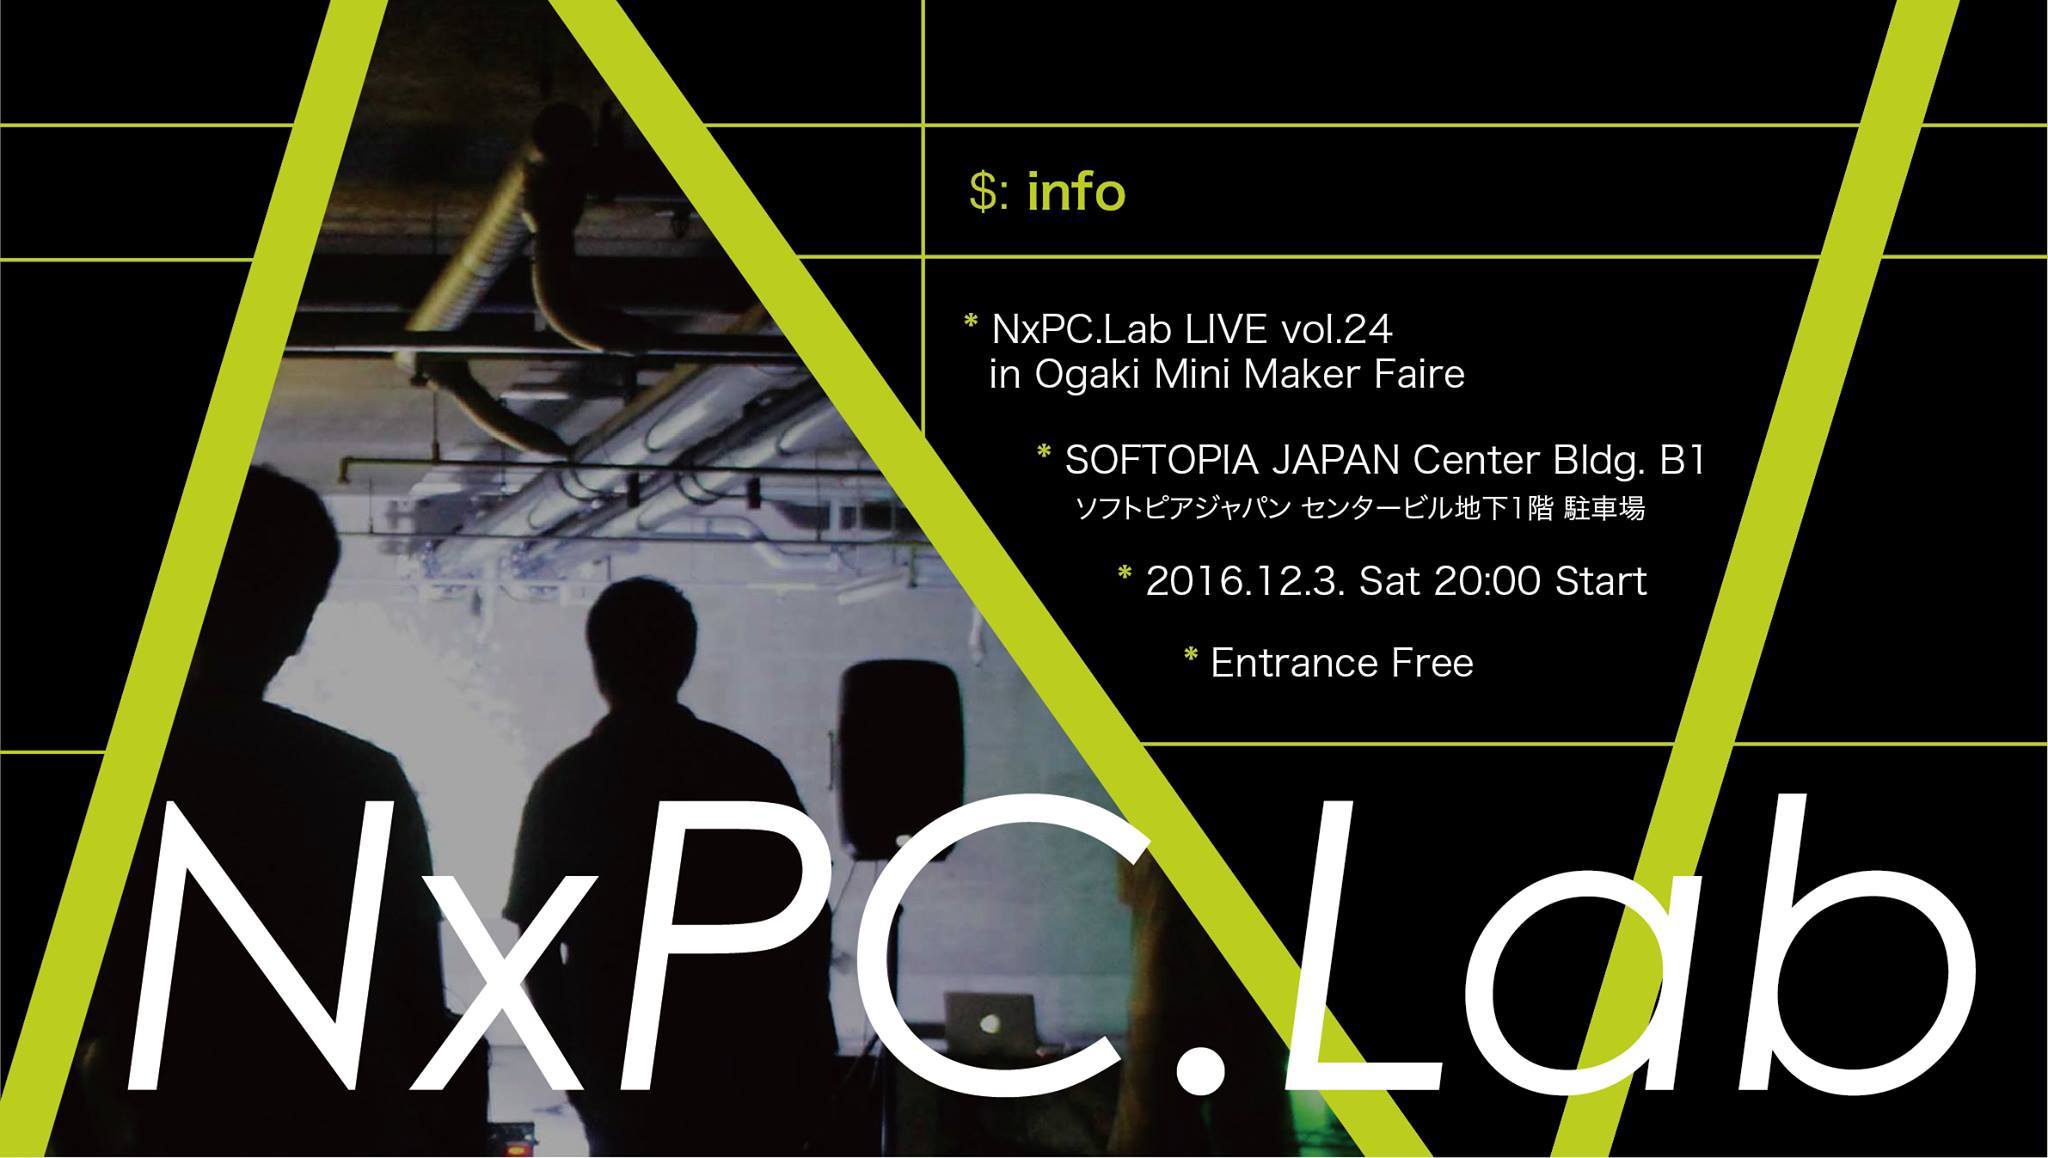 NxPC.Live Vol.25 OGAKI MINI MMAKER FAIRE 